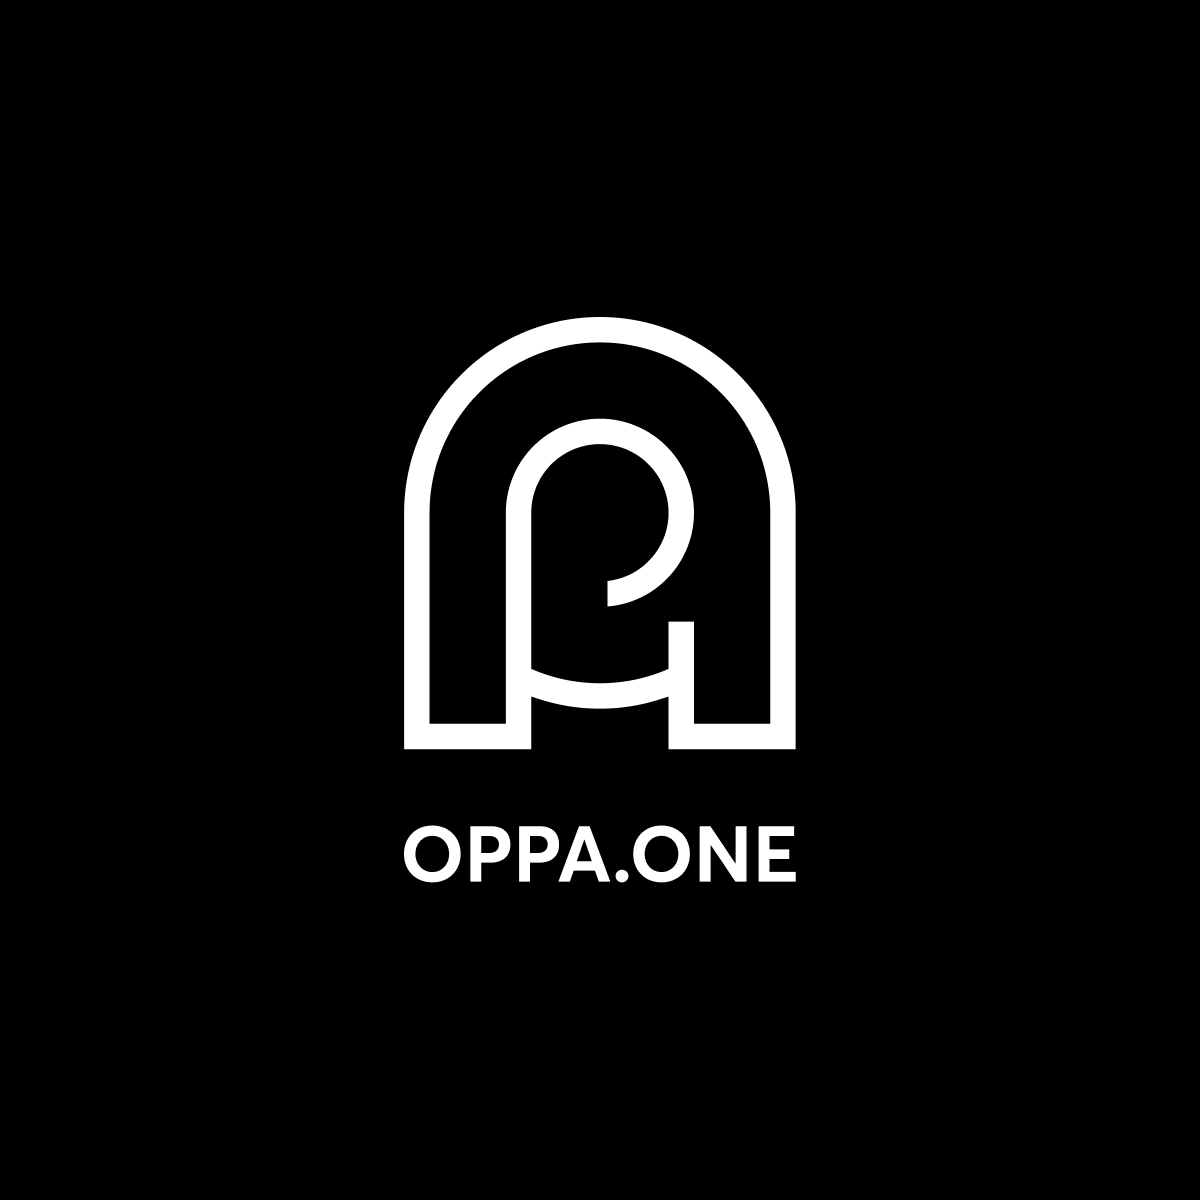 OPPA - Trang mua sắm áo thun thời trang hiện đại thuận tiện cho bạn